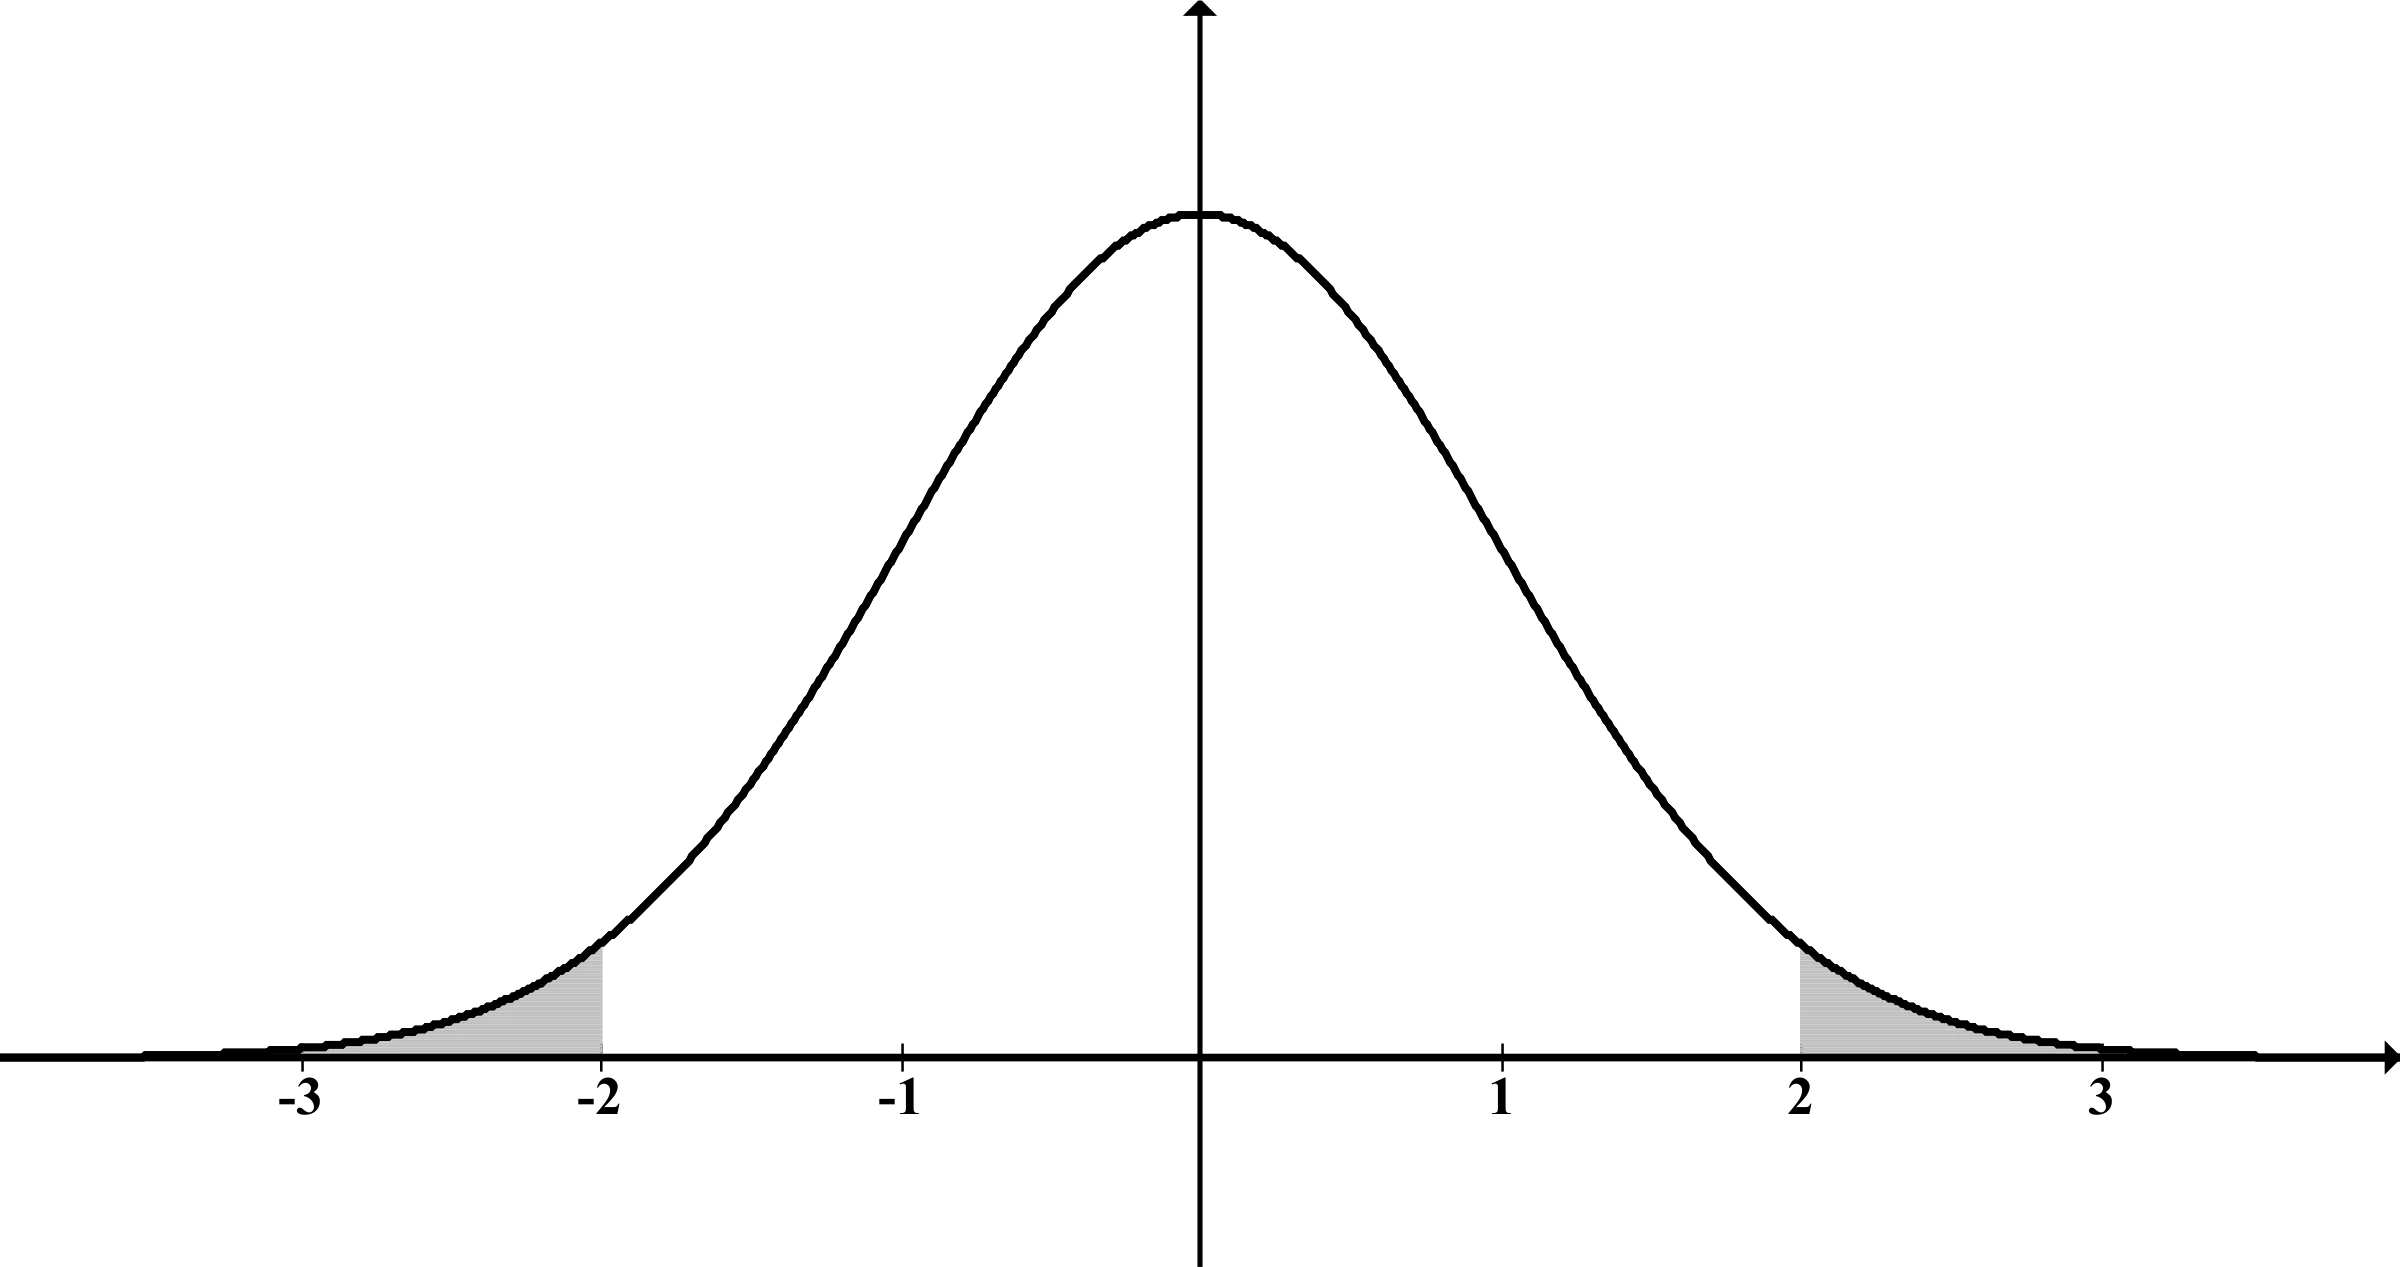 Un grÃ¡fico simple que muestra una distribuciÃ³n normal o gaussiana